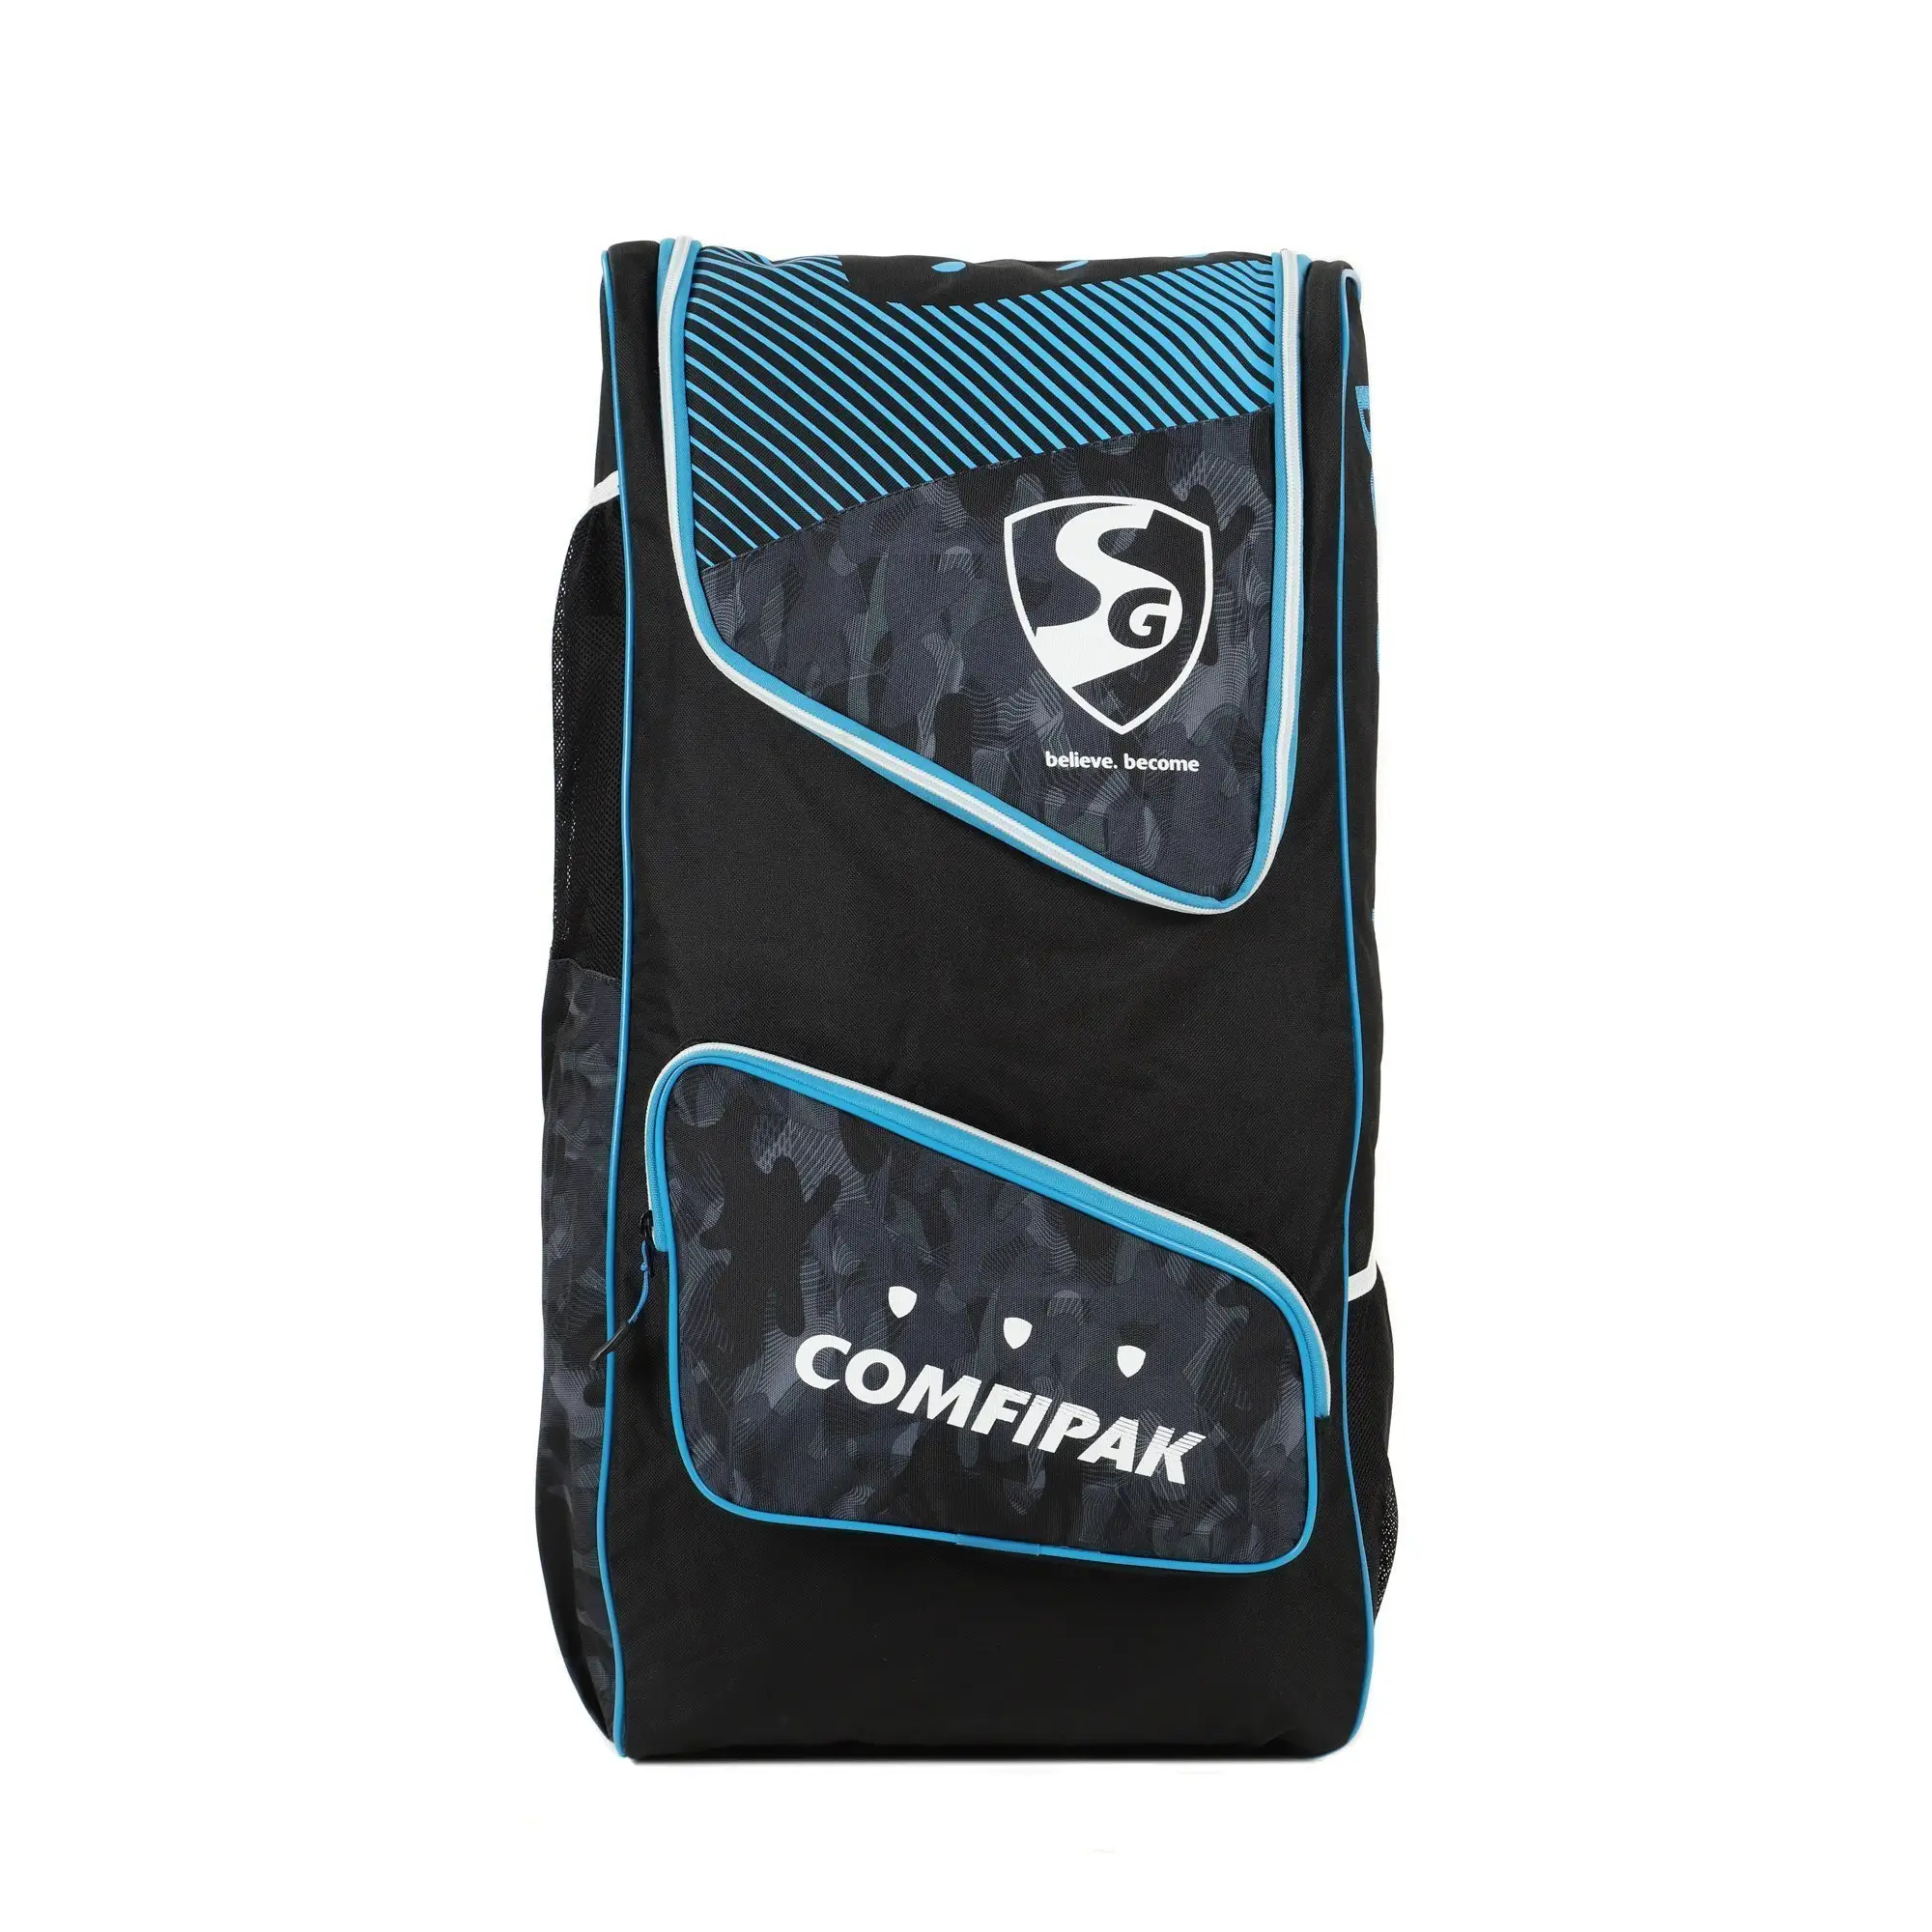 SG Comfipak Cricket Kit Bag Black & Blue Color Back Pack - BAG - PERSONAL